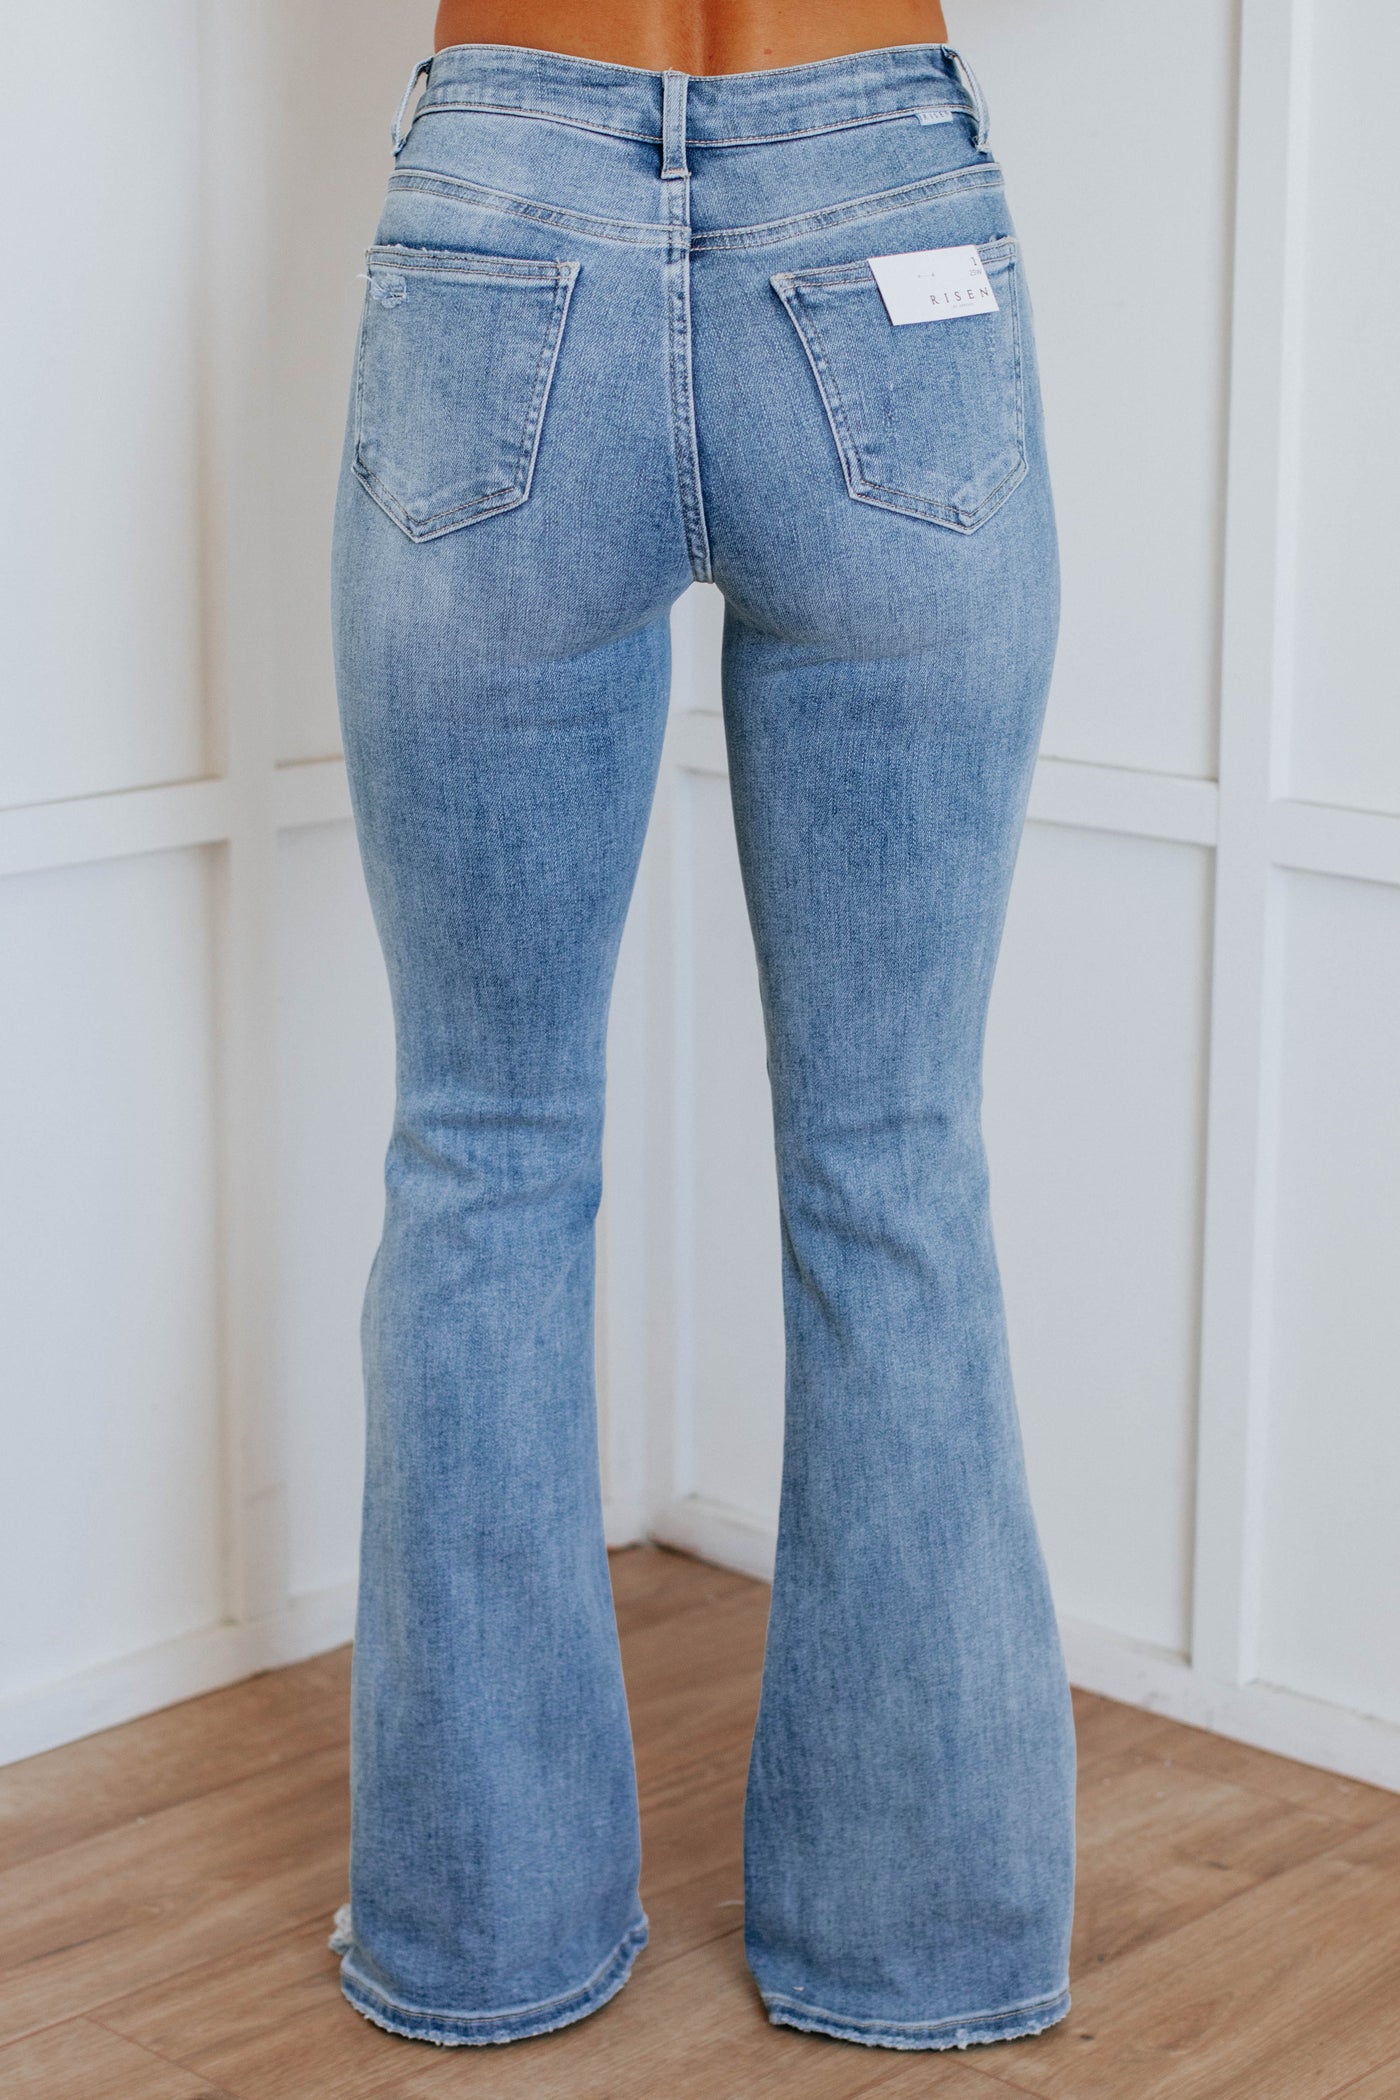 Samiya Risen Flare Jeans